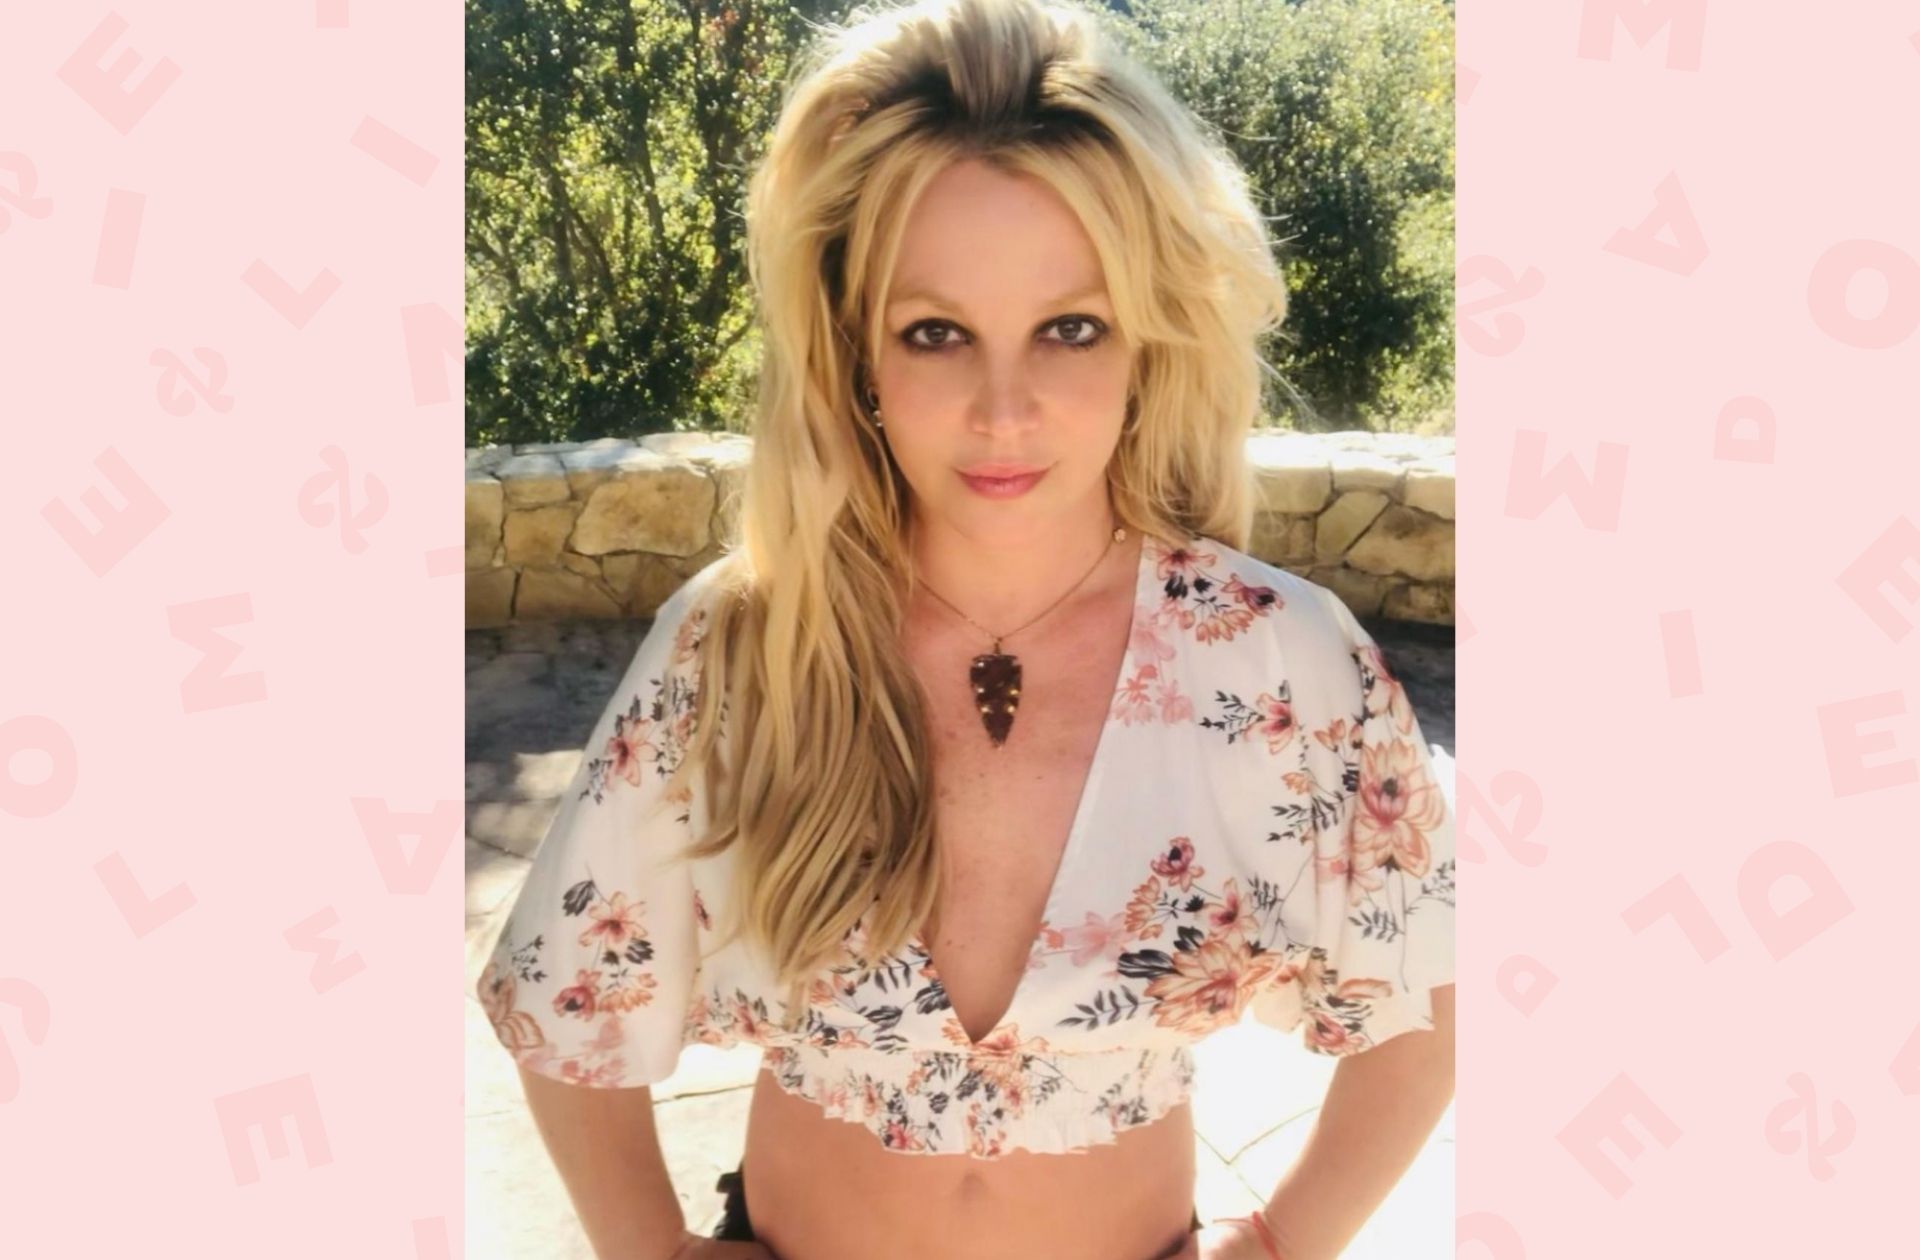 Photo : Couverture de La femme en moi, biographie de Britney